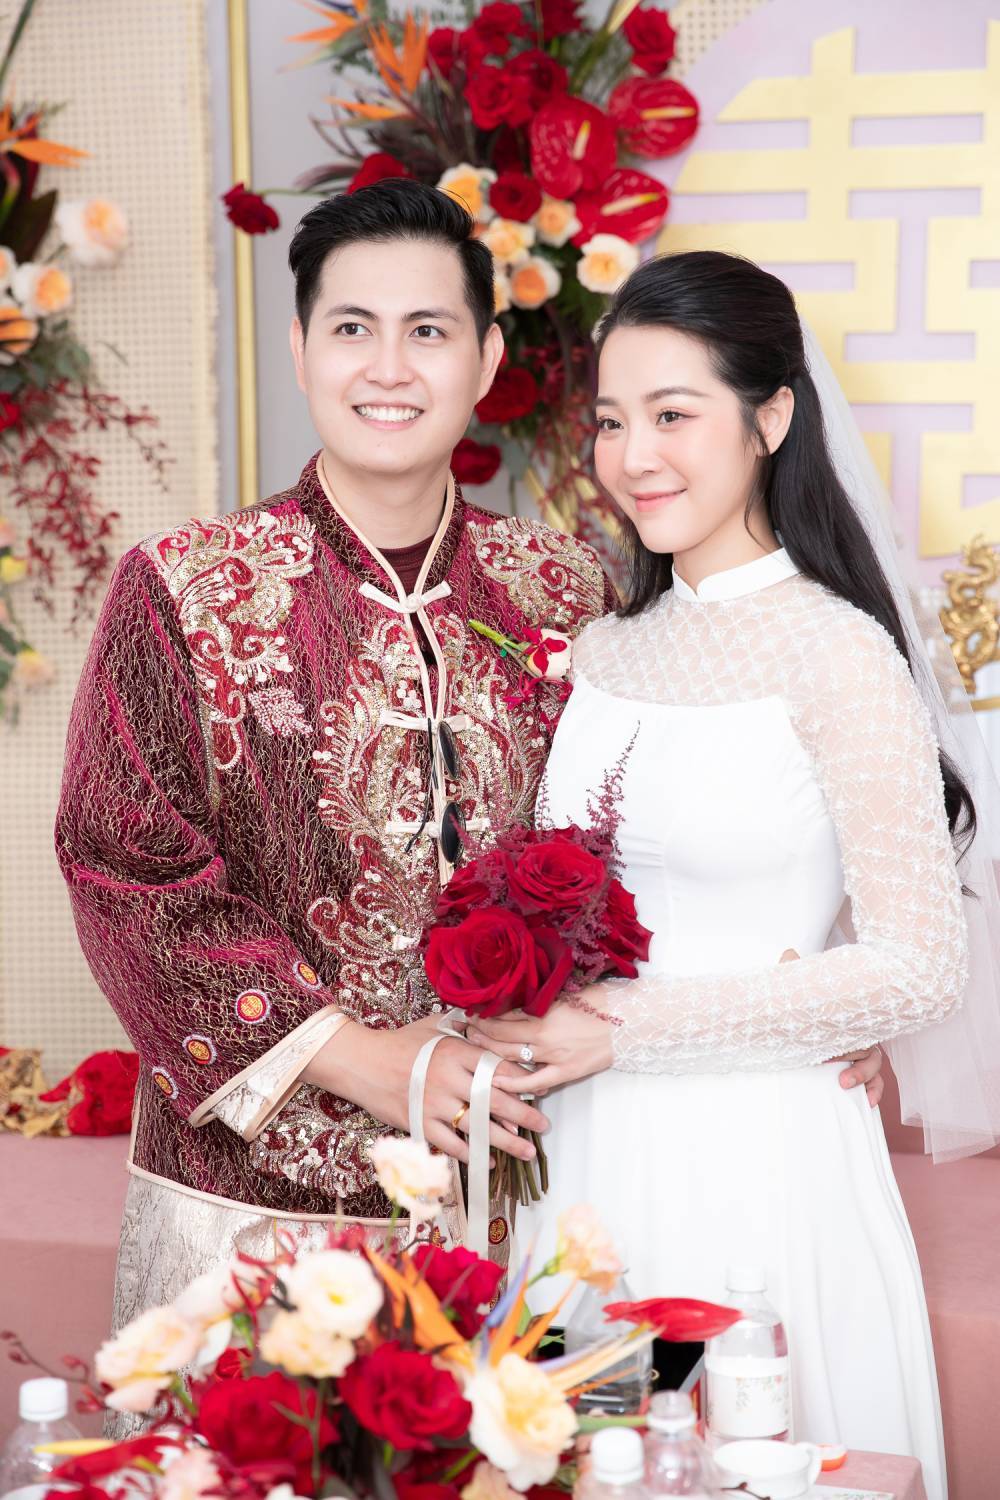  
Karen Nguyễn cùng chồng xứng đôi vừa lứa trong lễ gia tiên tổ chức sáng ngày 17/6, cô dâu khéo léo chọn áo dài che bụng. (Ảnh: Karen Nguyễn)